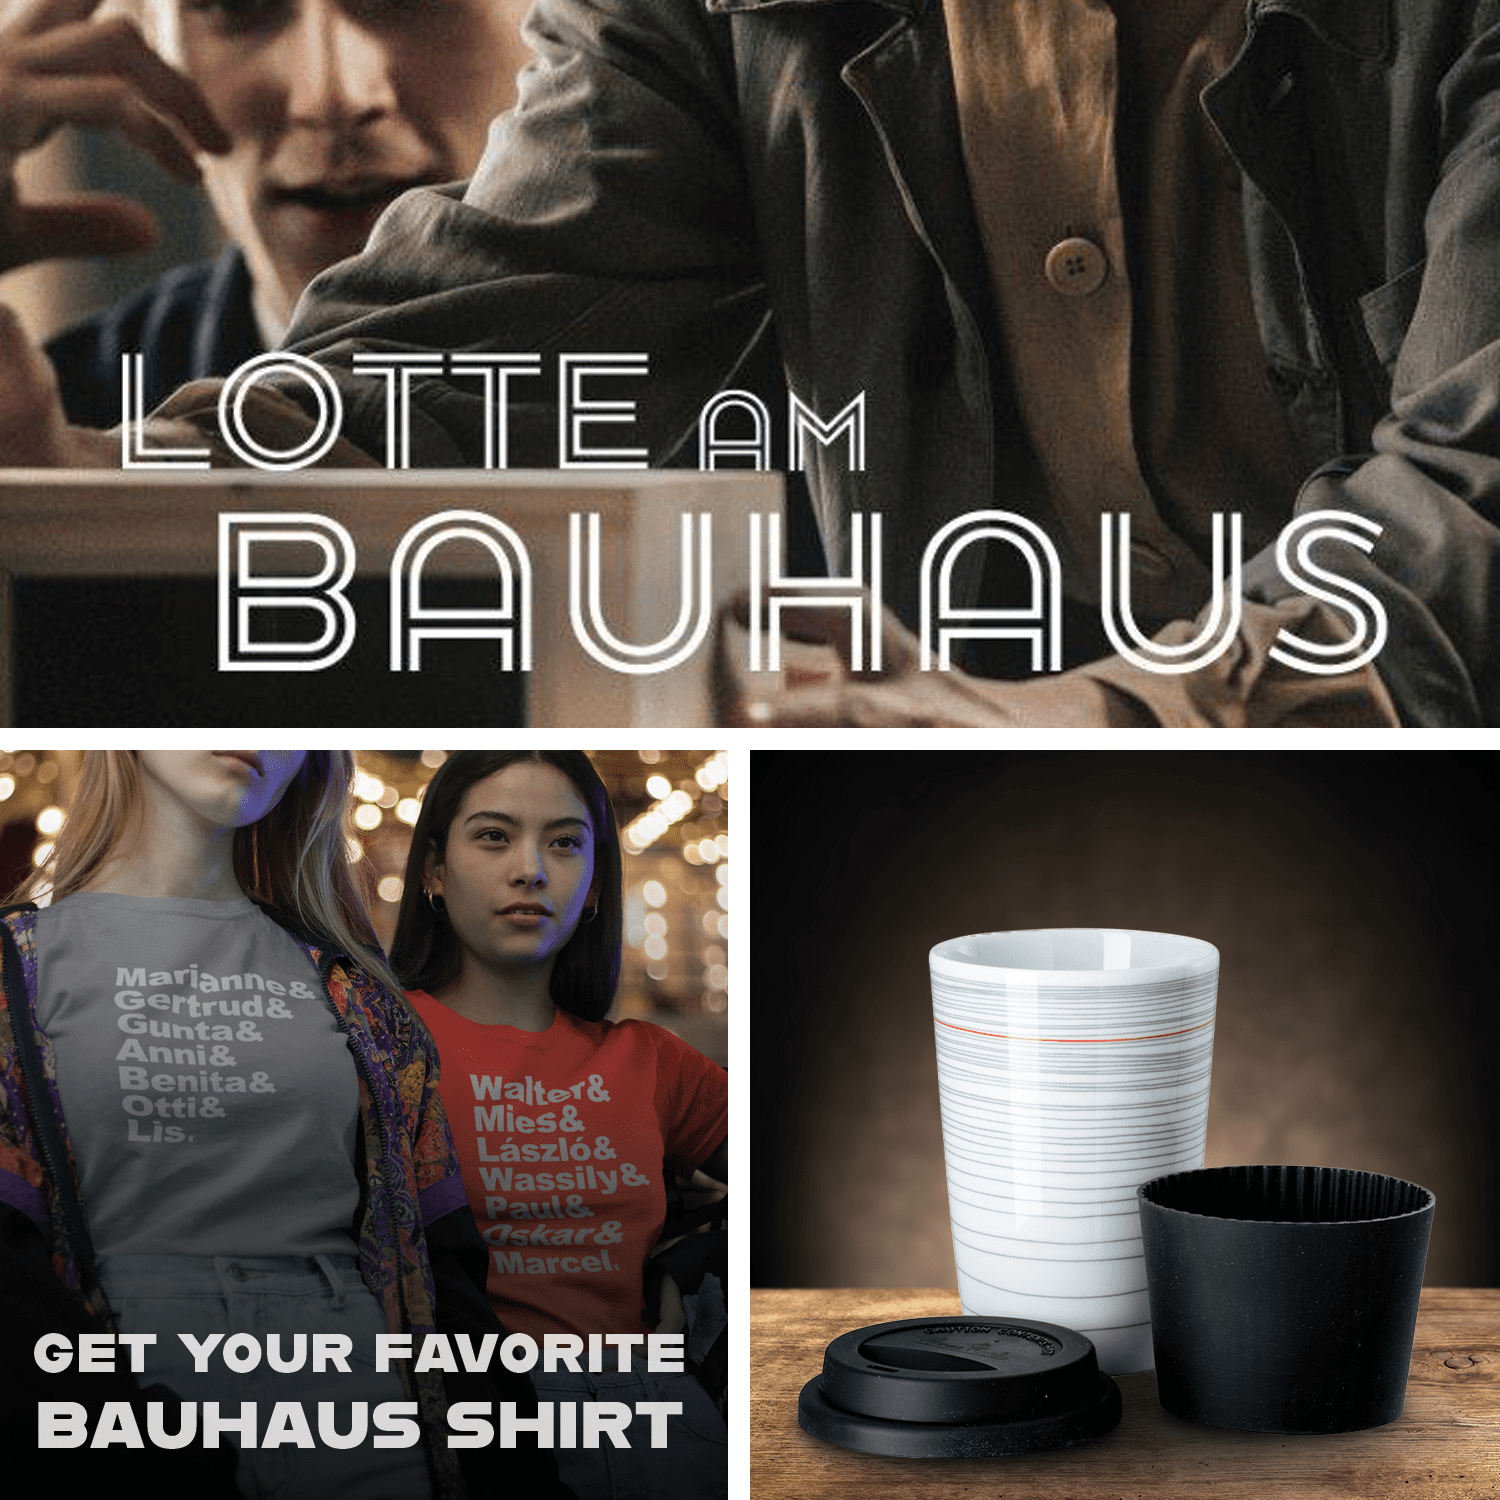 εικόνα του Lotte am Bauhaus + Mug Gropius + Favorite Shirt